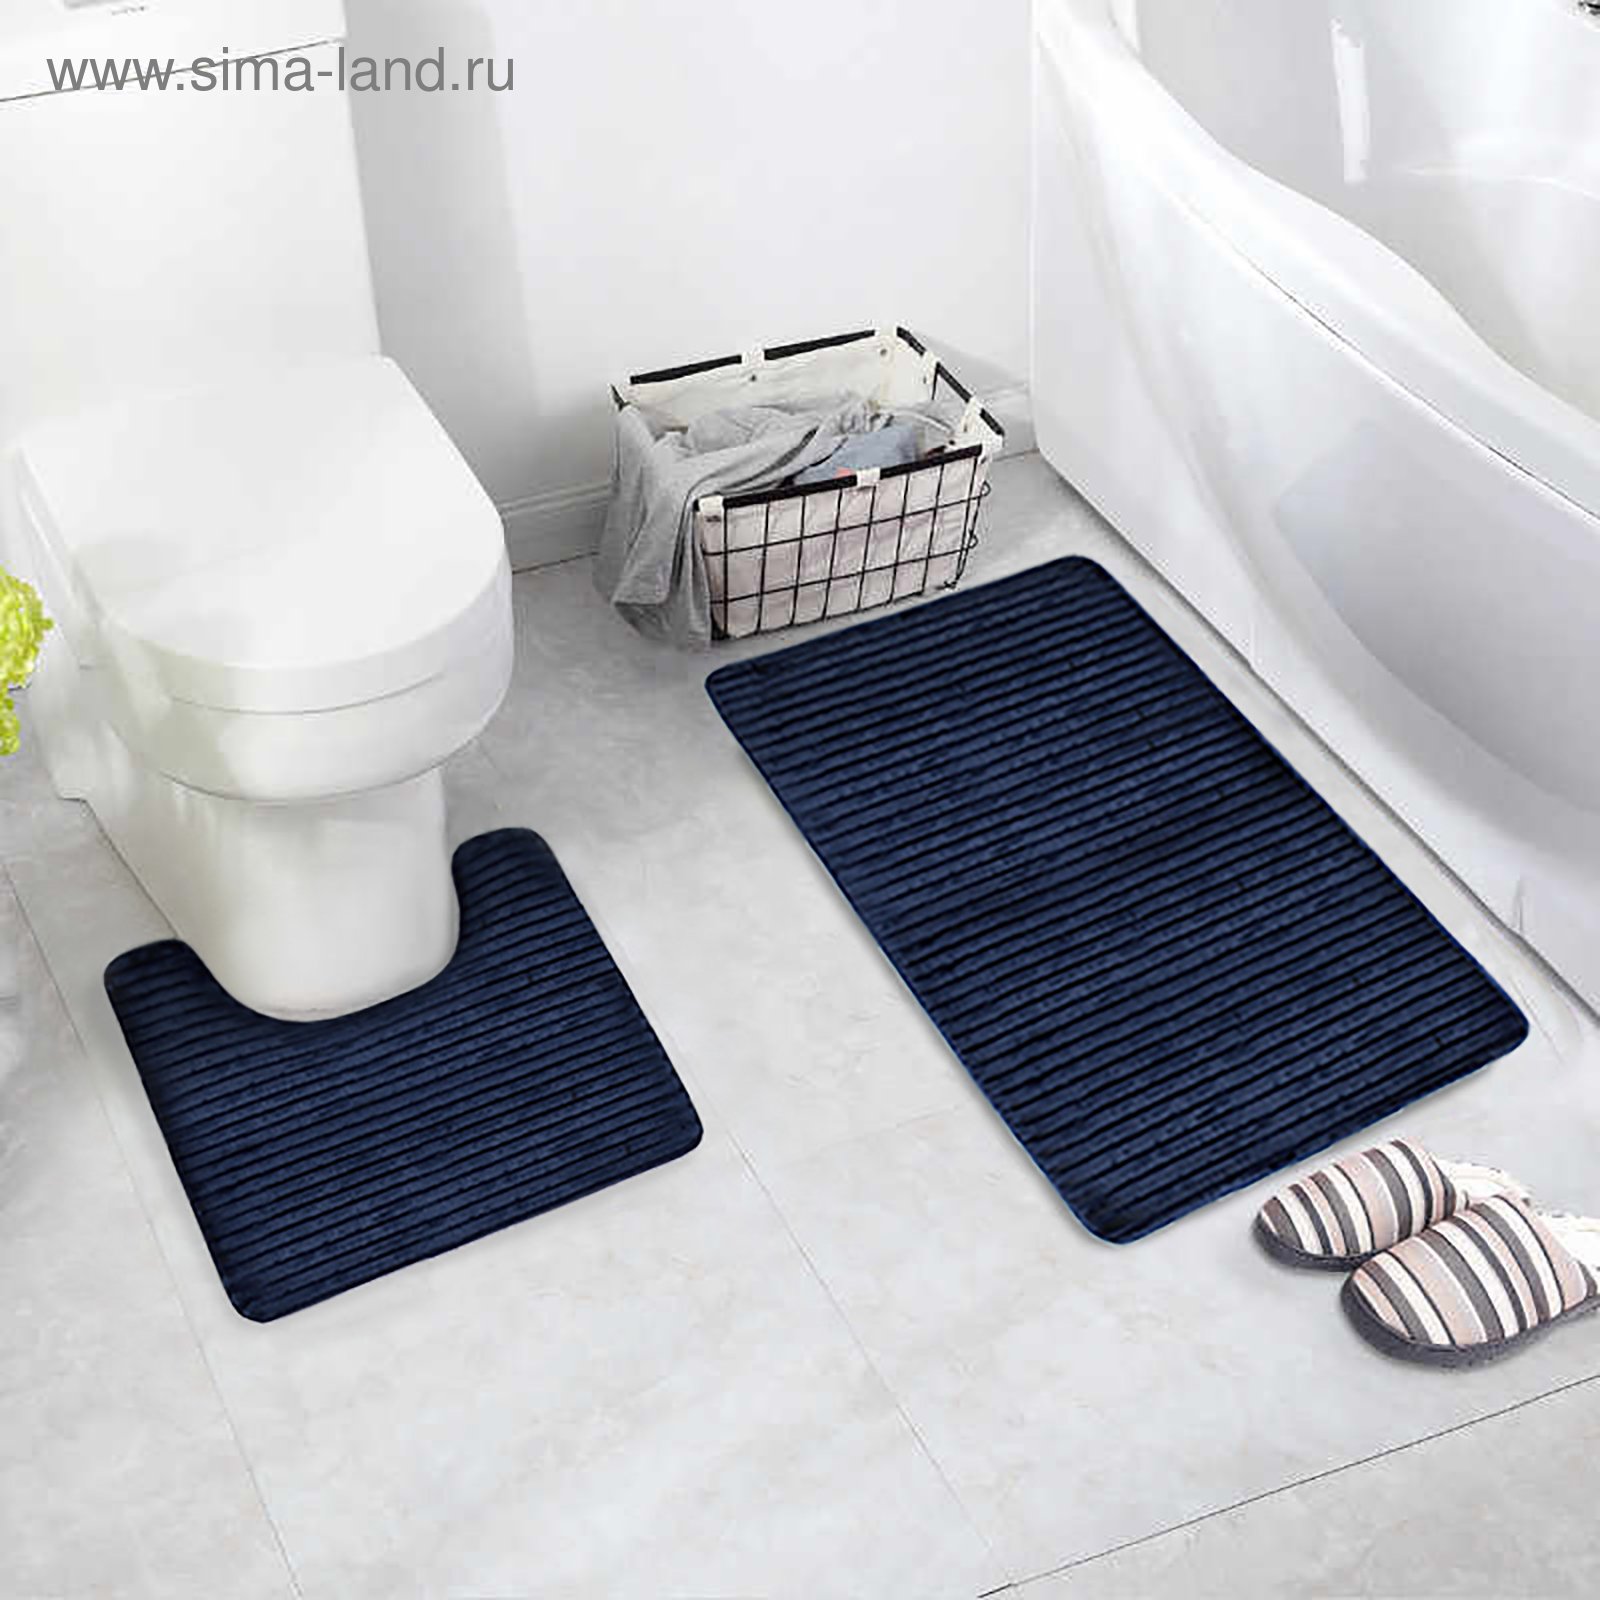 Набор коврик для ванной купить. Набор ковриков 2шт (50*80см 50*40см) ТМ "HOZBAТ". Коврики для ванной комнаты и туалета. Комплект ковриков для ванной и туалета. Коврик для ванной комнаты и туалета комплект.